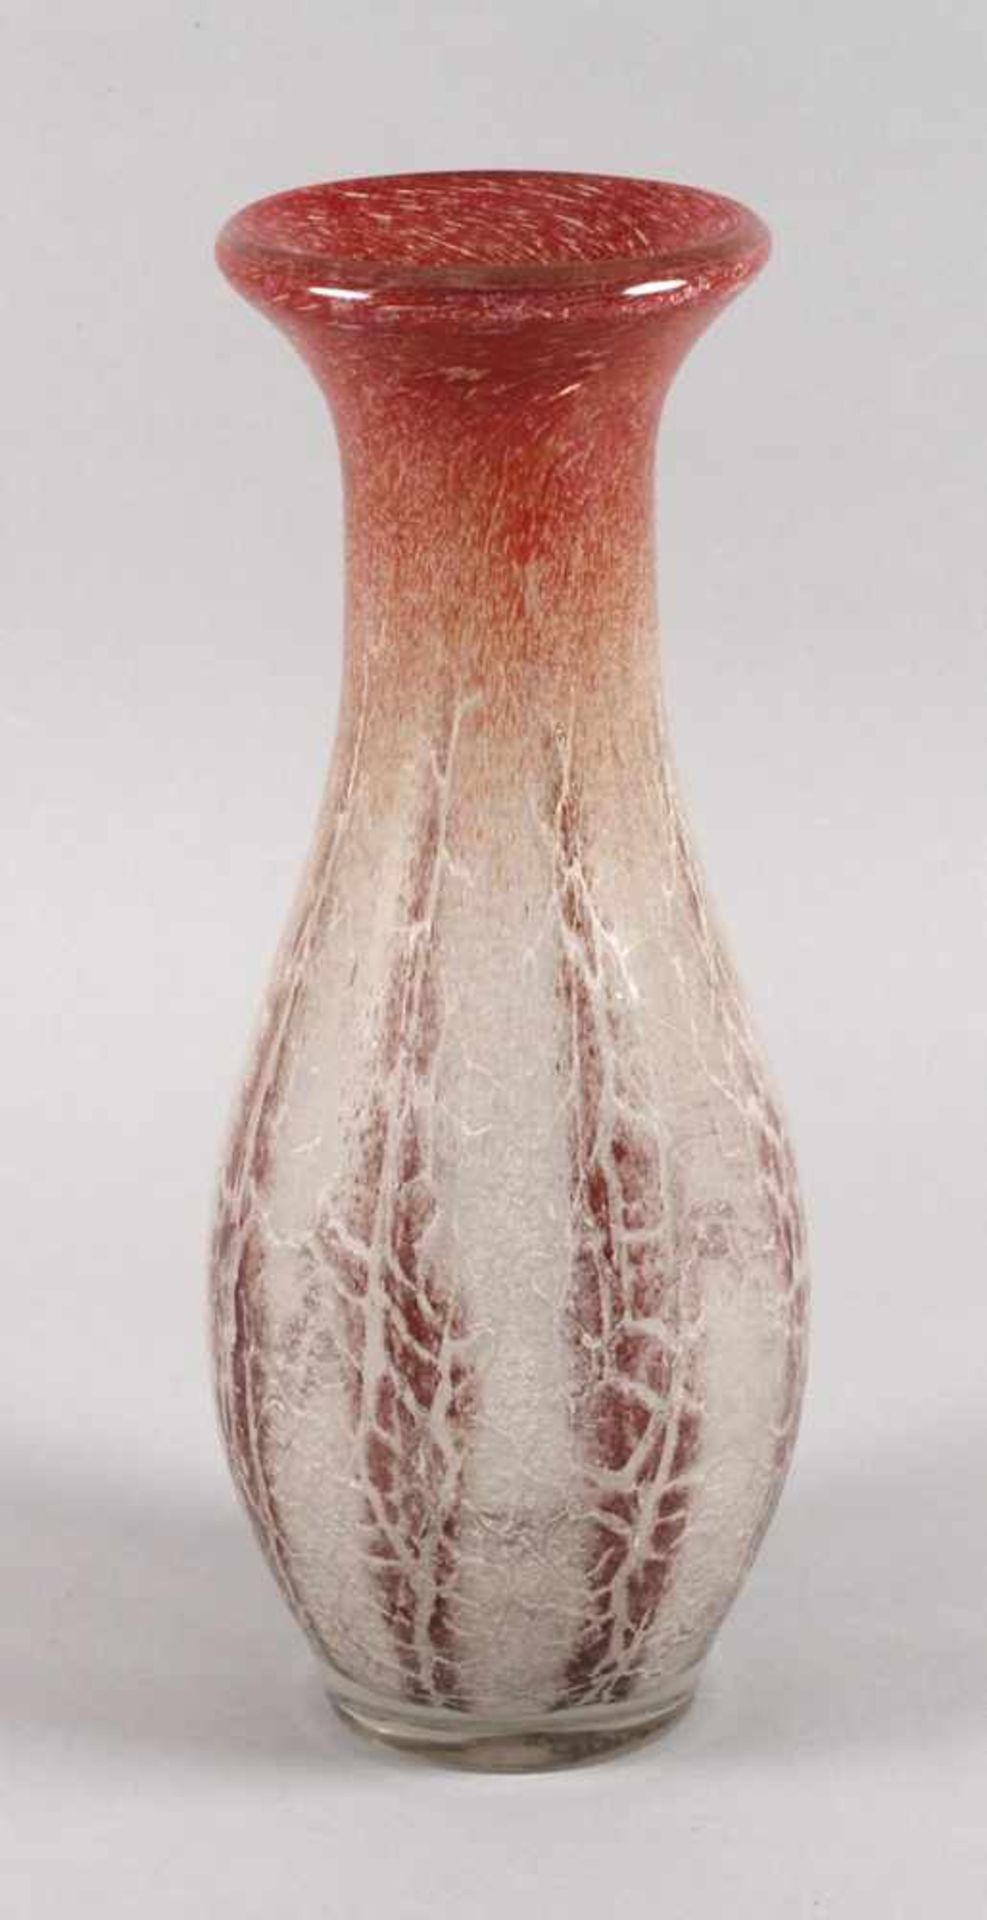 WMF Ikora große Vase1930er Jahre, farbloses massives Glas, ausgekugelter Abriss, eingeschmolzene